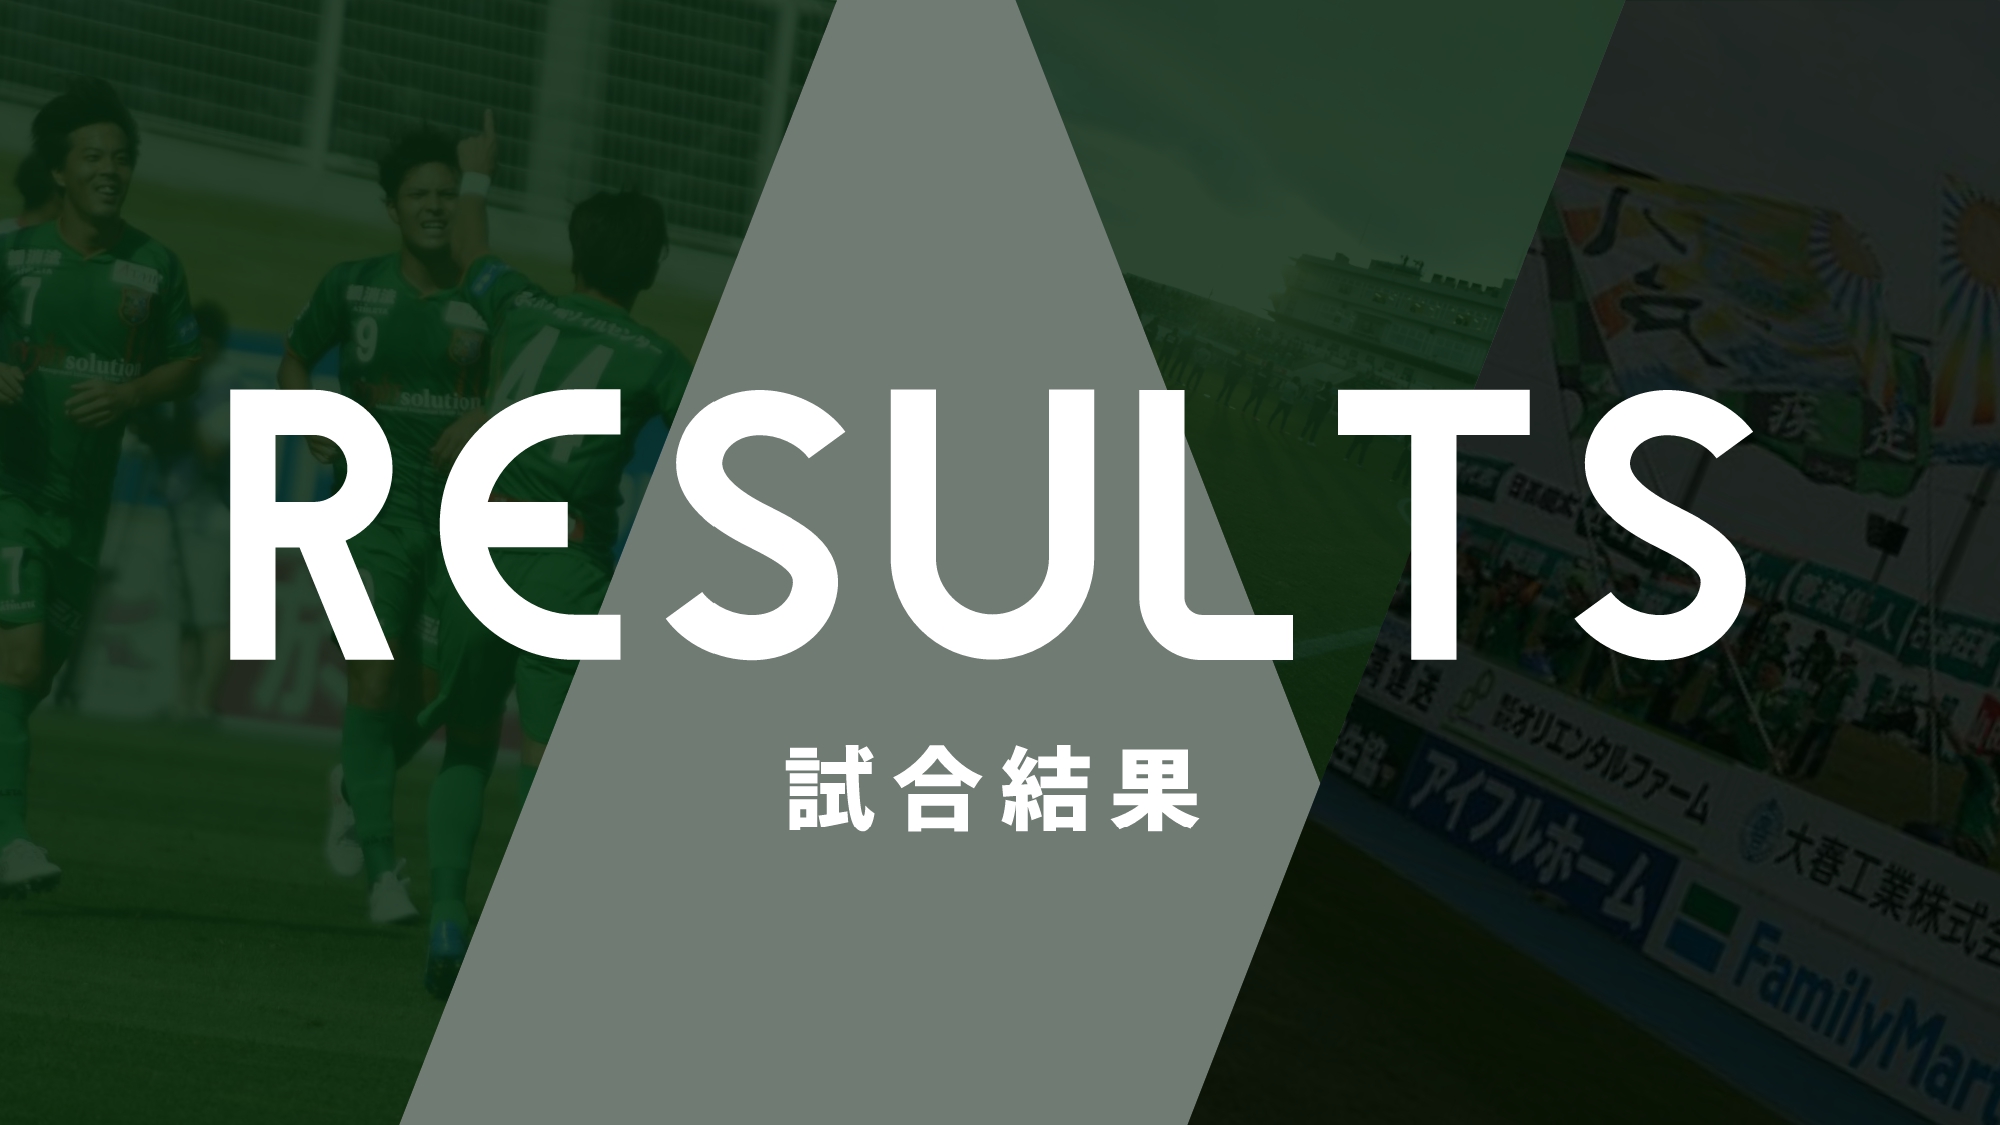 4 25熊本戦 試合結果 コメント フォトギャラリー ヴァンラーレ八戸fcオフィシャルサイト